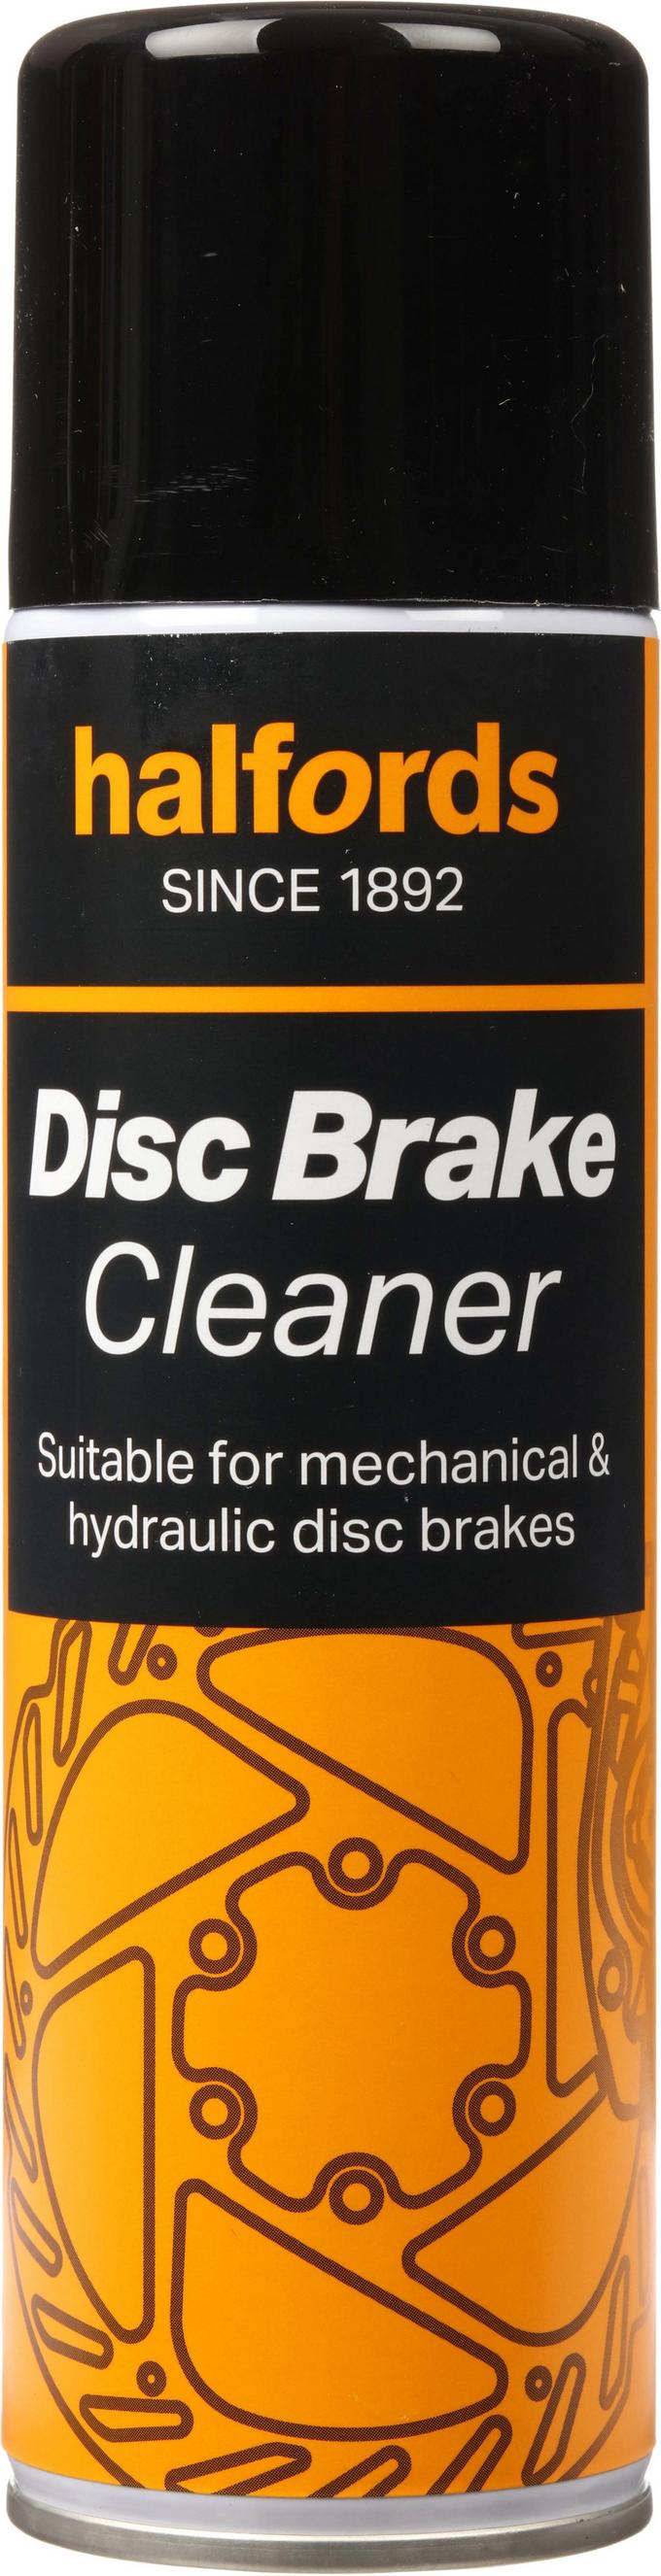 Brake & Clutch Fluid - Dot 4 Fluid, Halfords UK